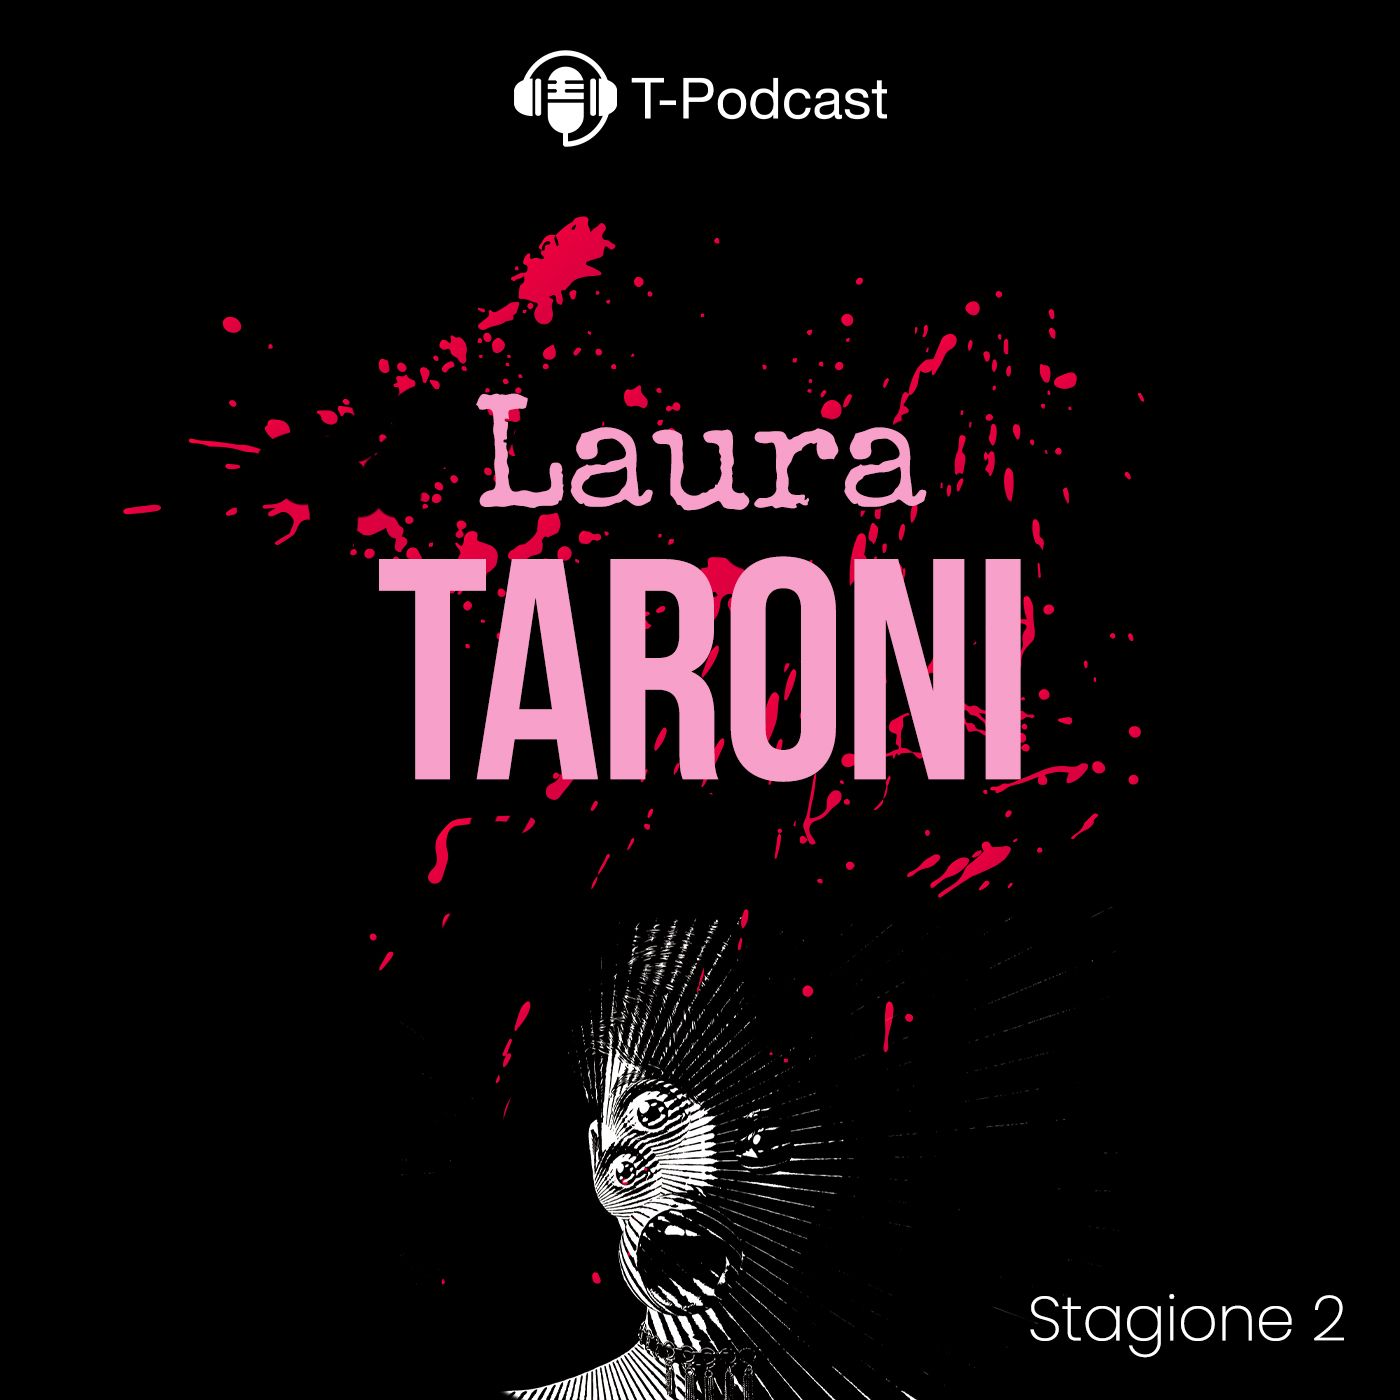 S2 E3 - Laura Taroni